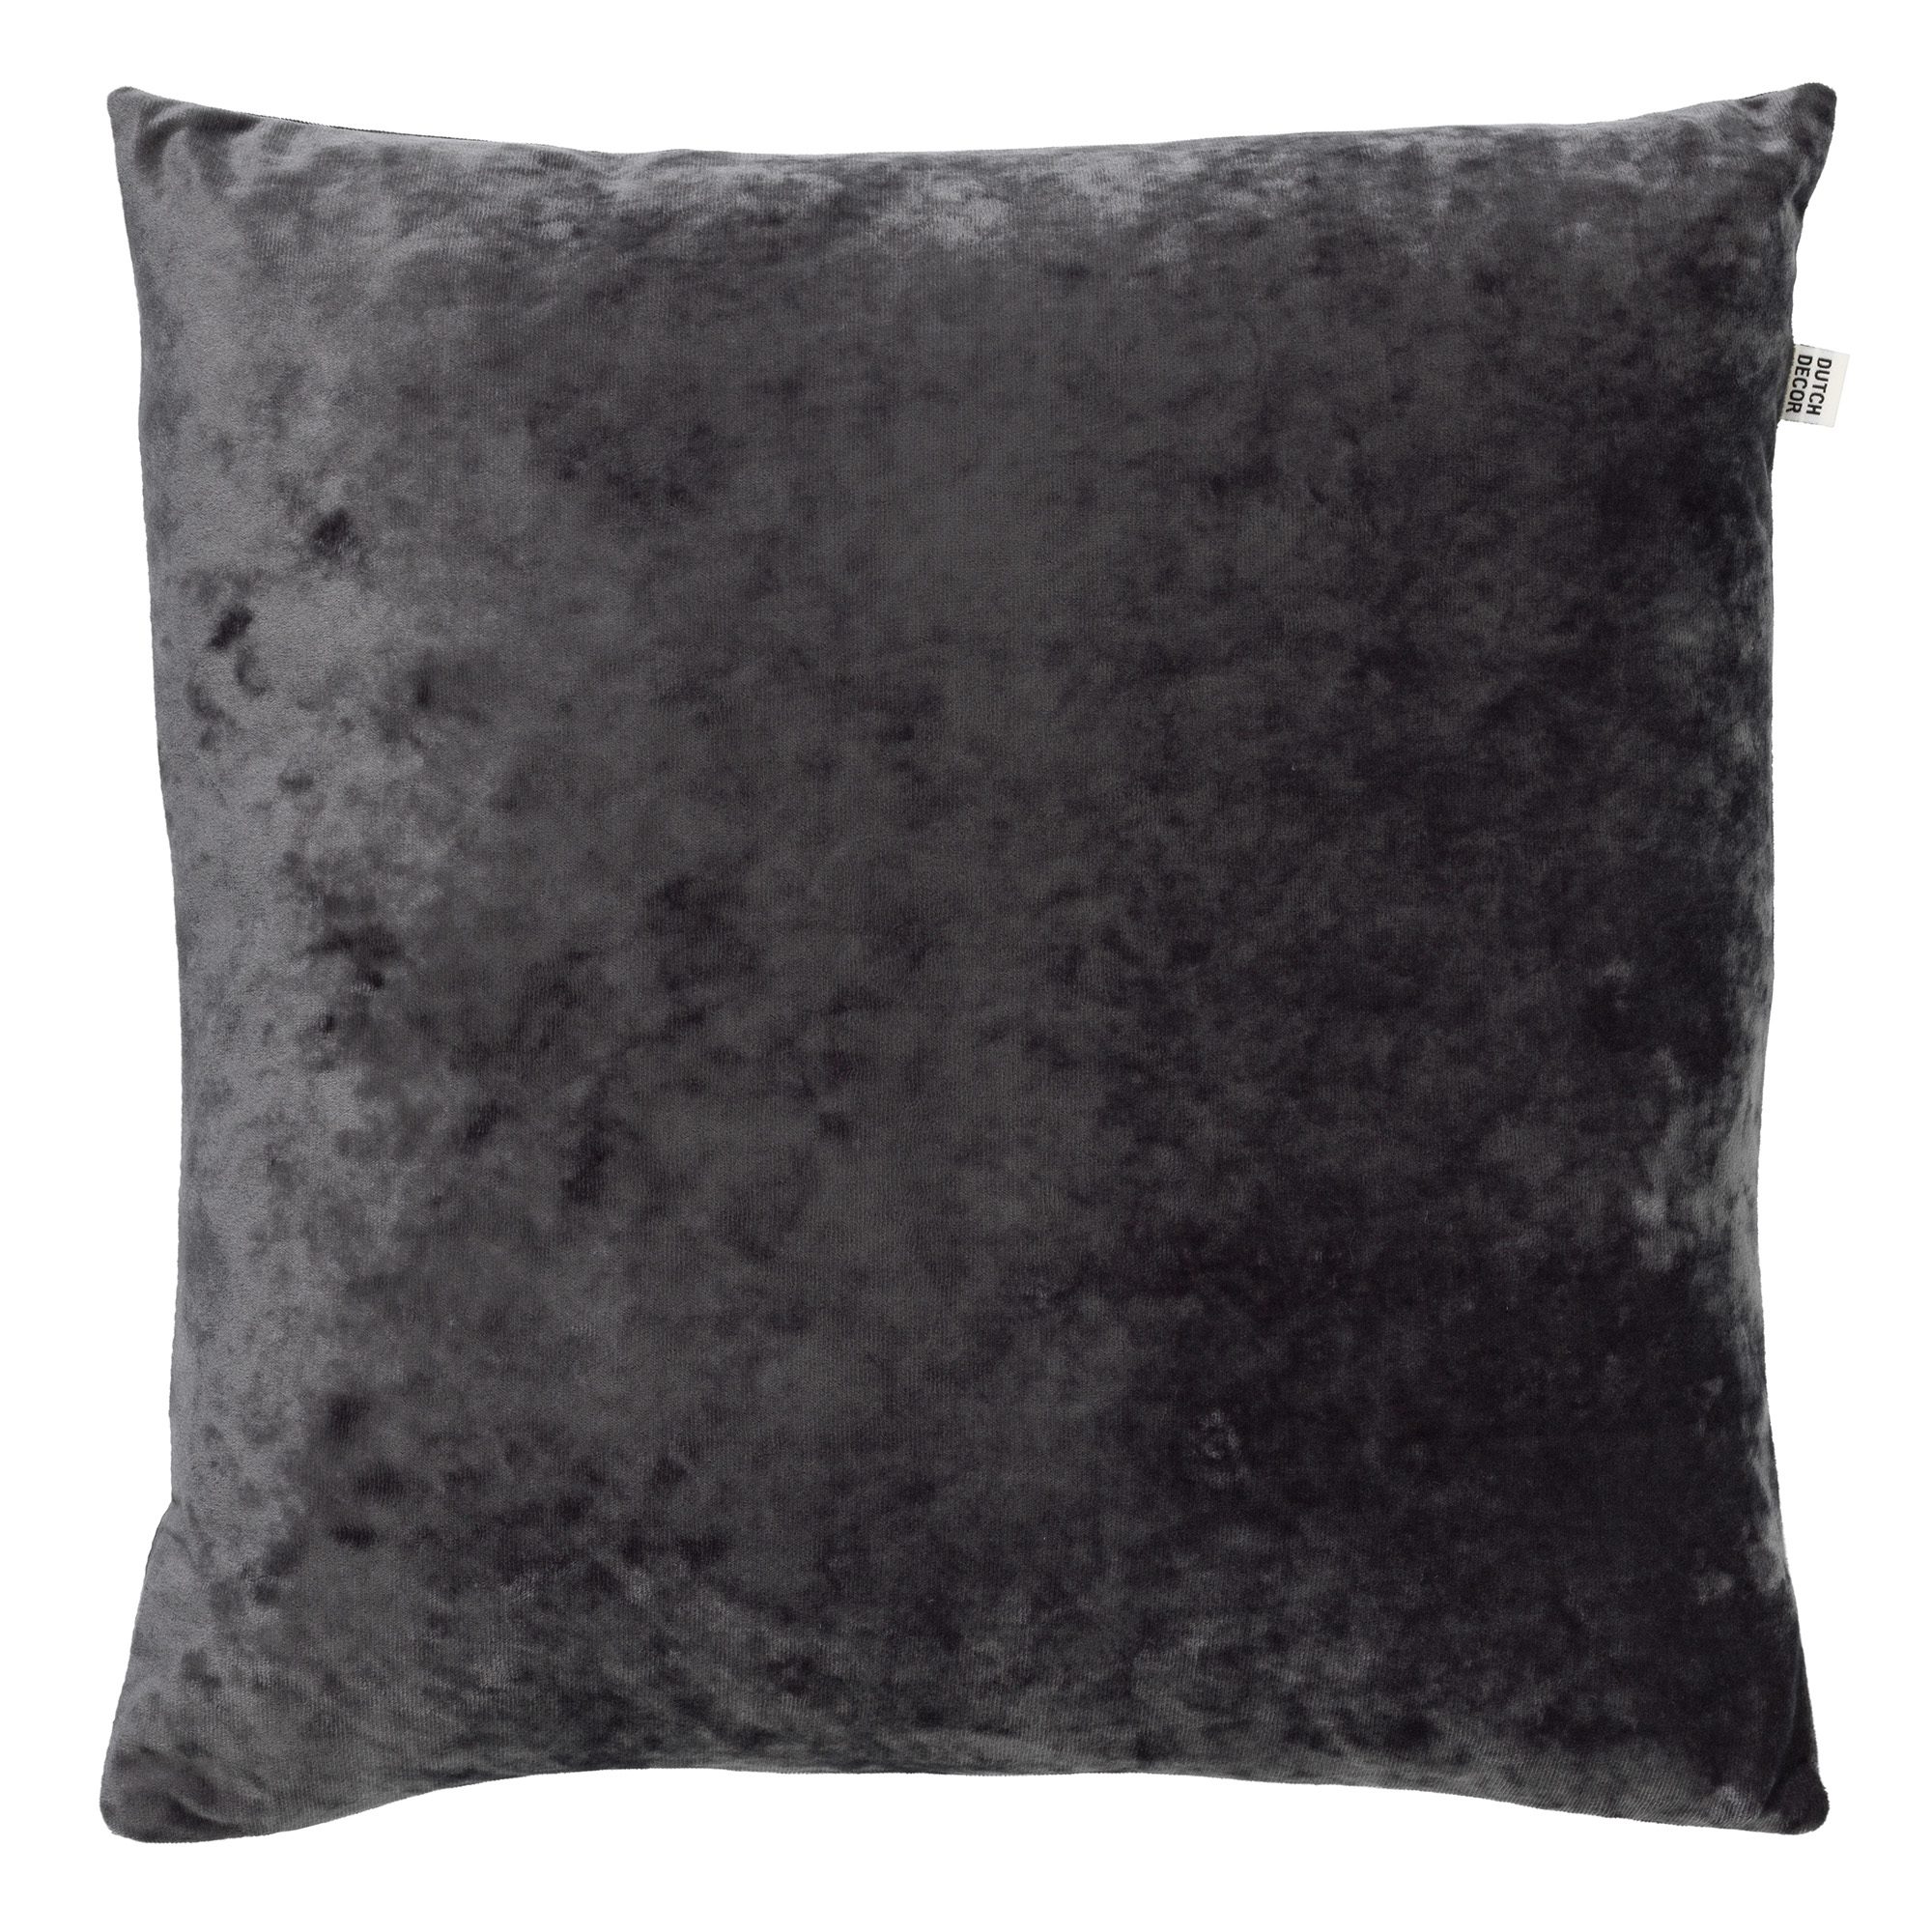 SKY - Kussenhoes velvet Charcoal Gray 45x45 cm - grijs